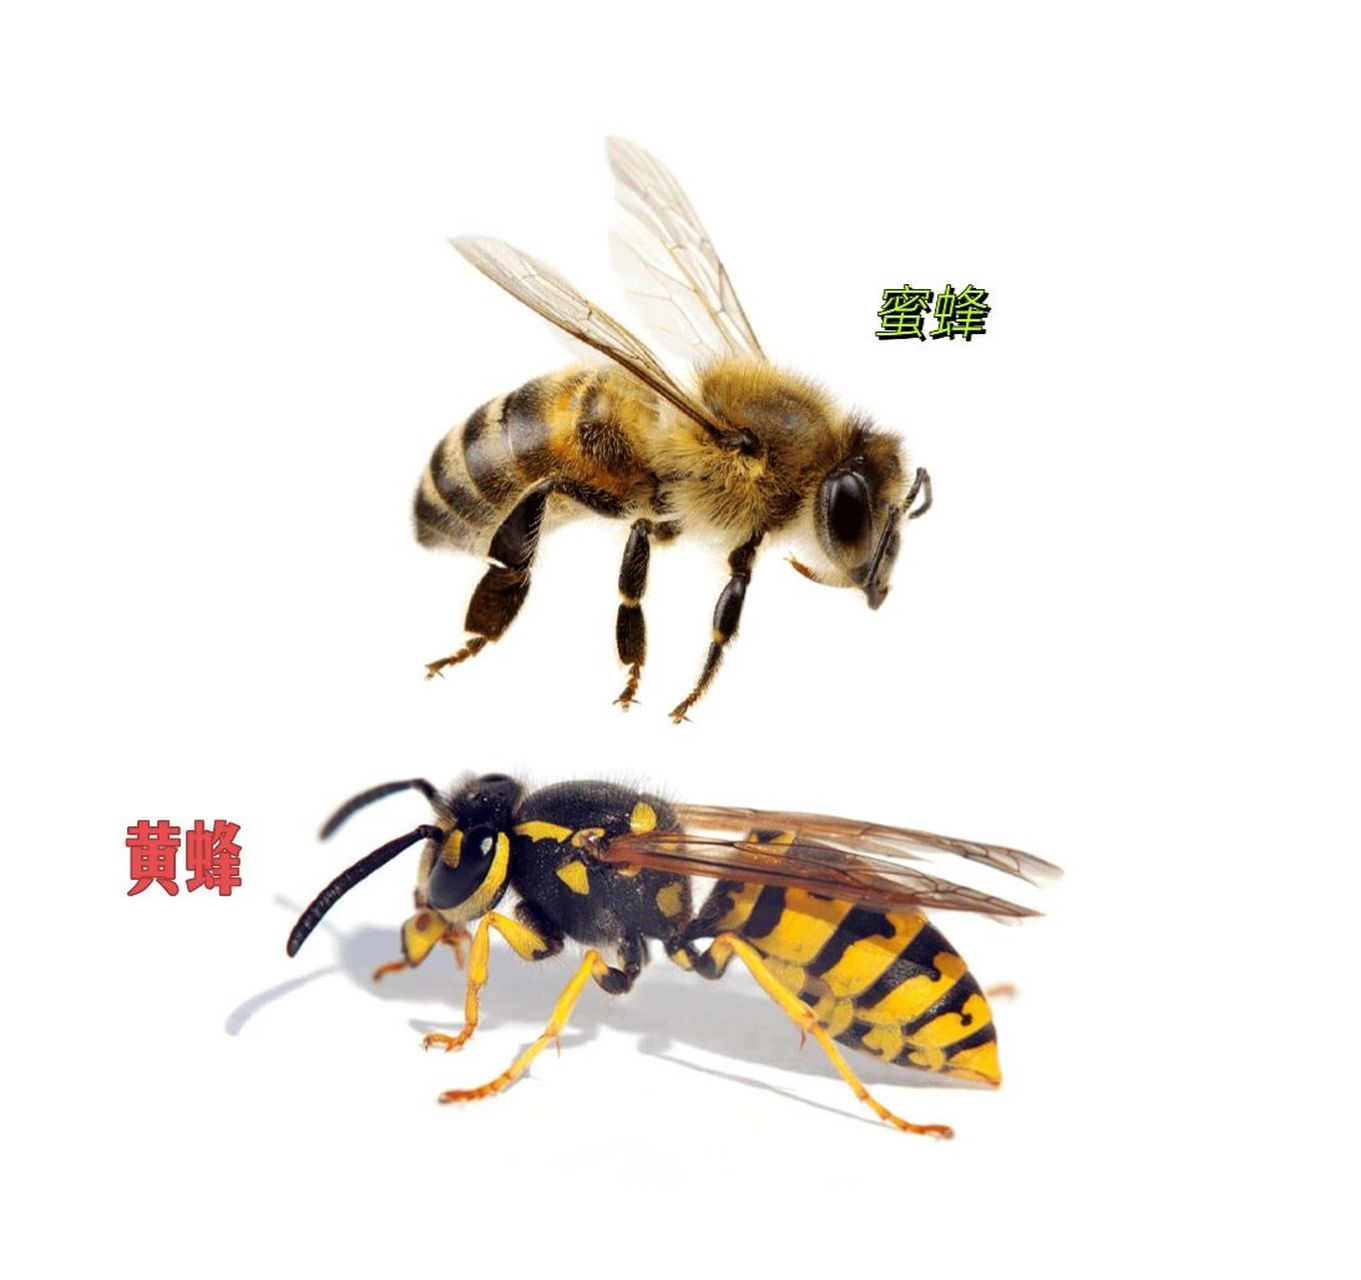 动物世界小知识:黄蜂与蜜蜂的区别 蜜蜂:身上遍布绒毛,颜色没那么鲜艳